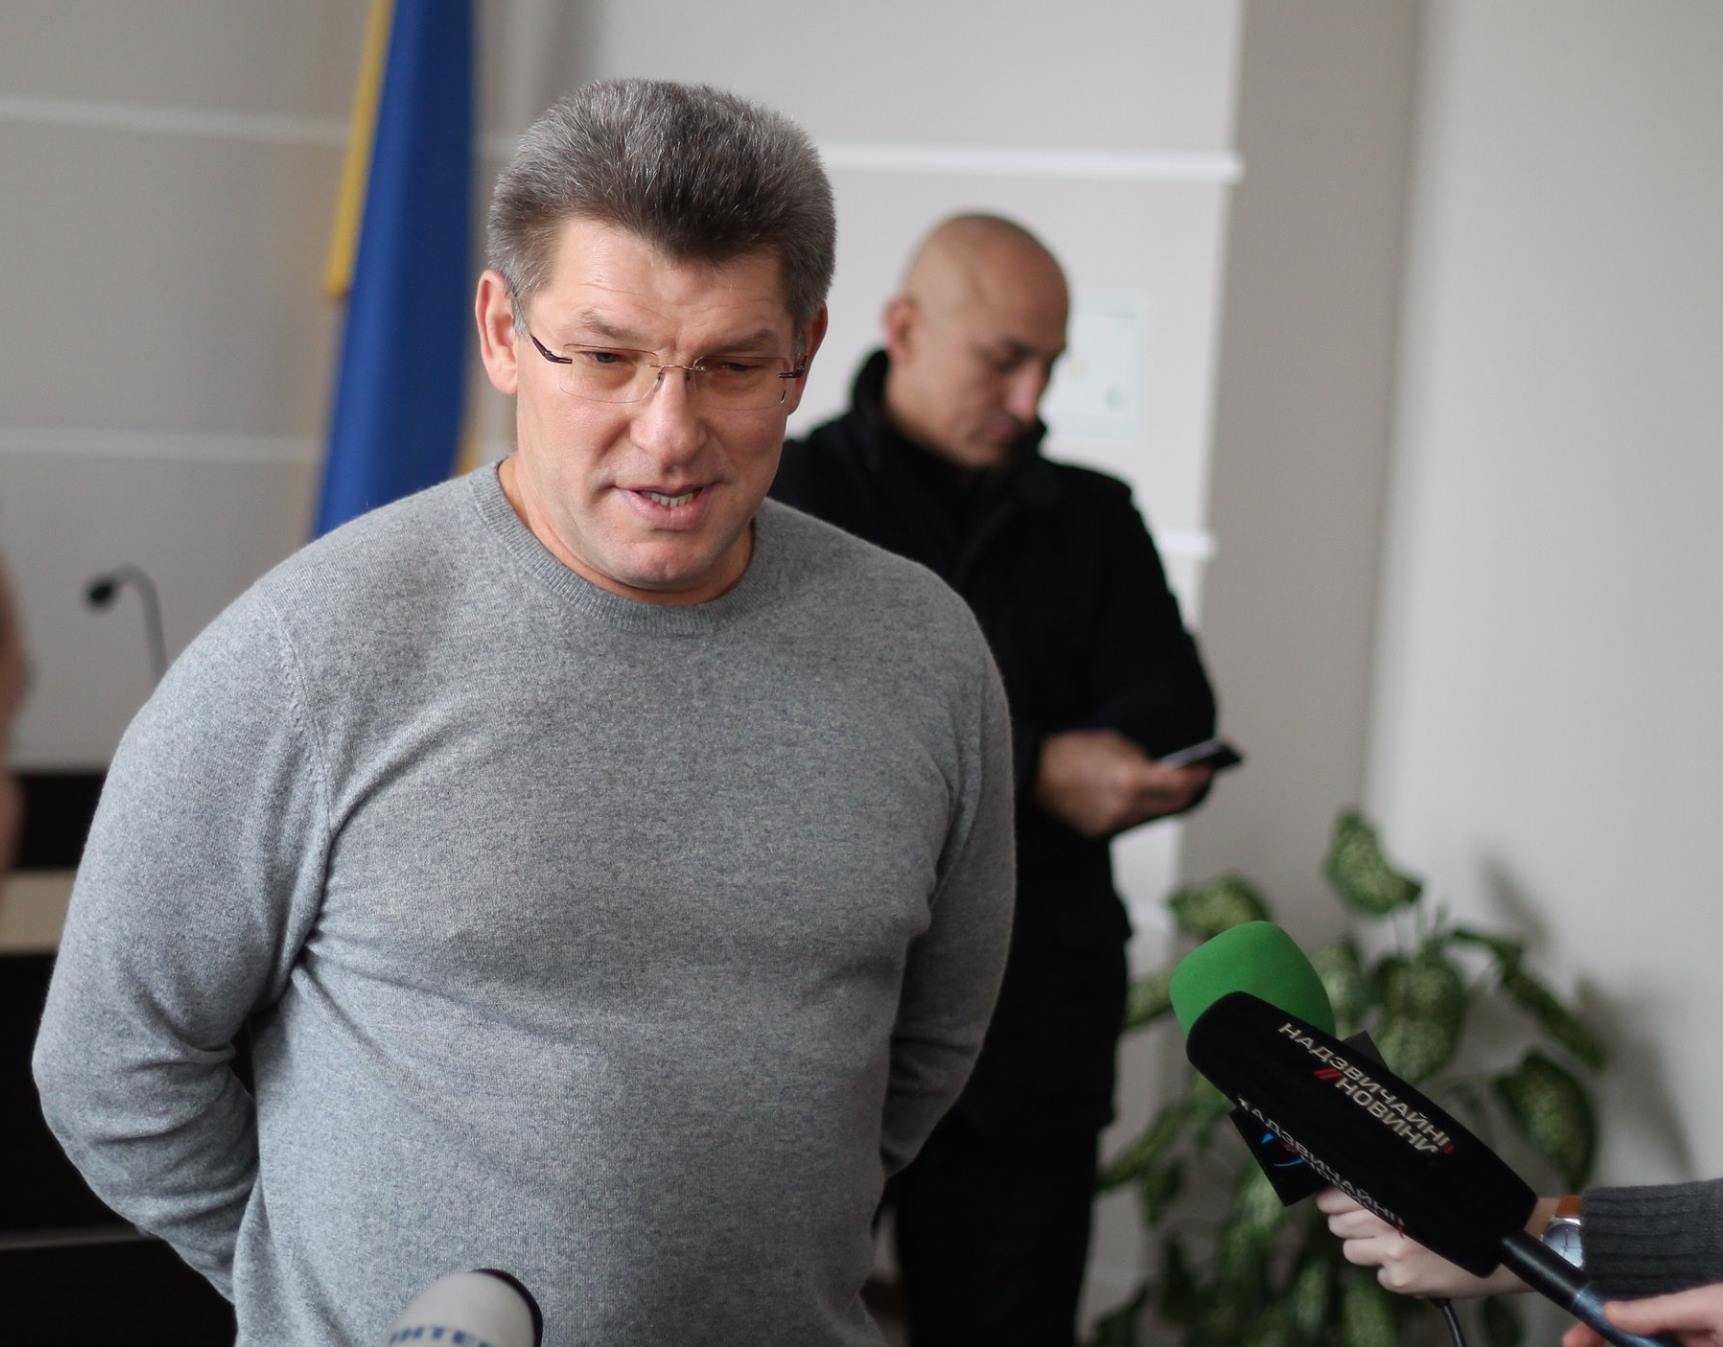 Одесский судья Глуханчук, подозреваемый в коррупции и вождении в пьяном состоянии, готовится пройти переаттестацию